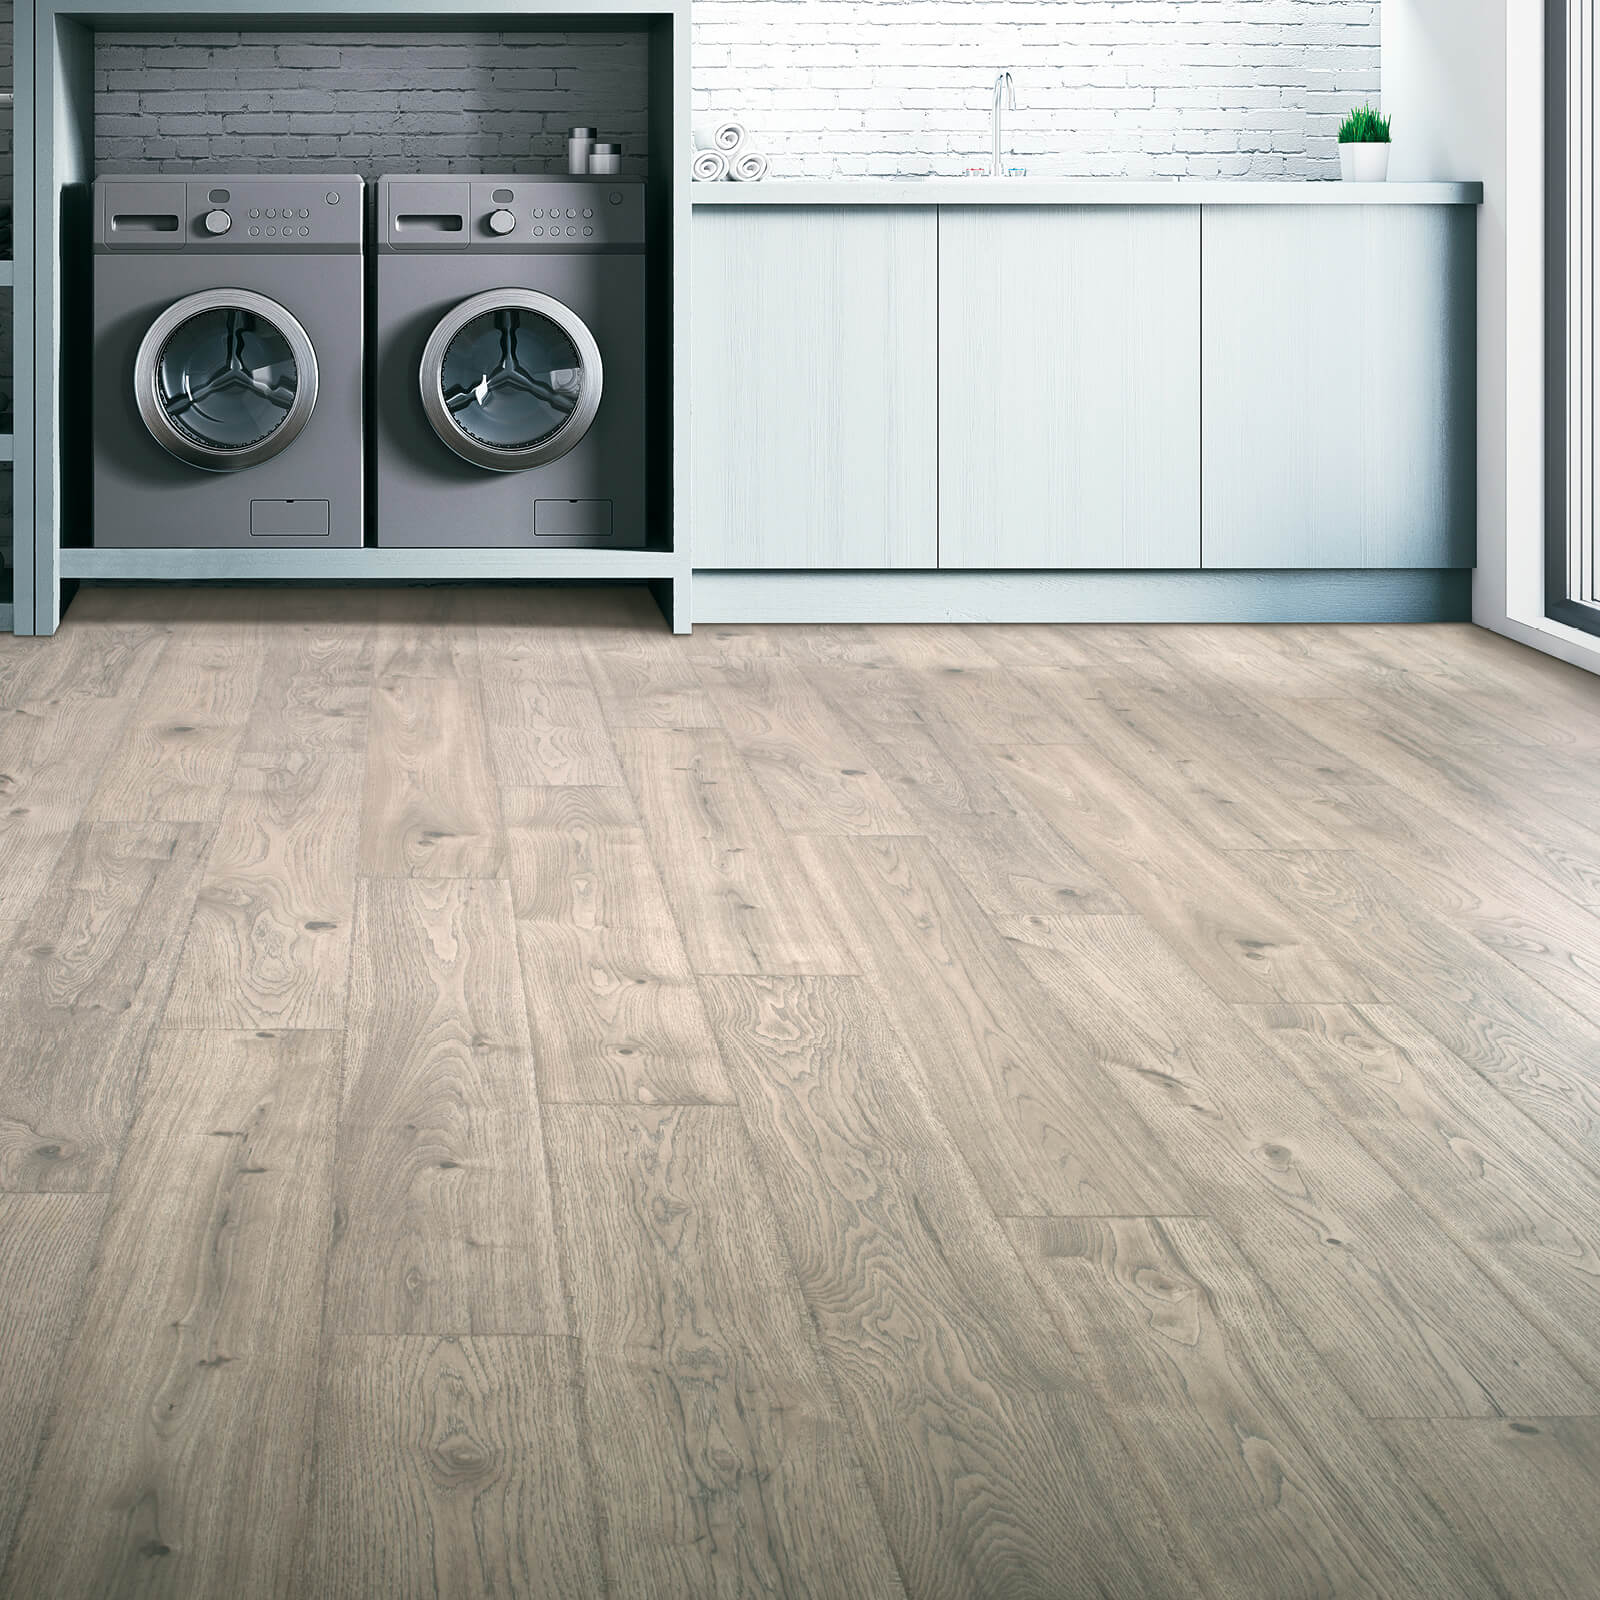 Laundry room Laminate flooring | Right Carpet & Interiors